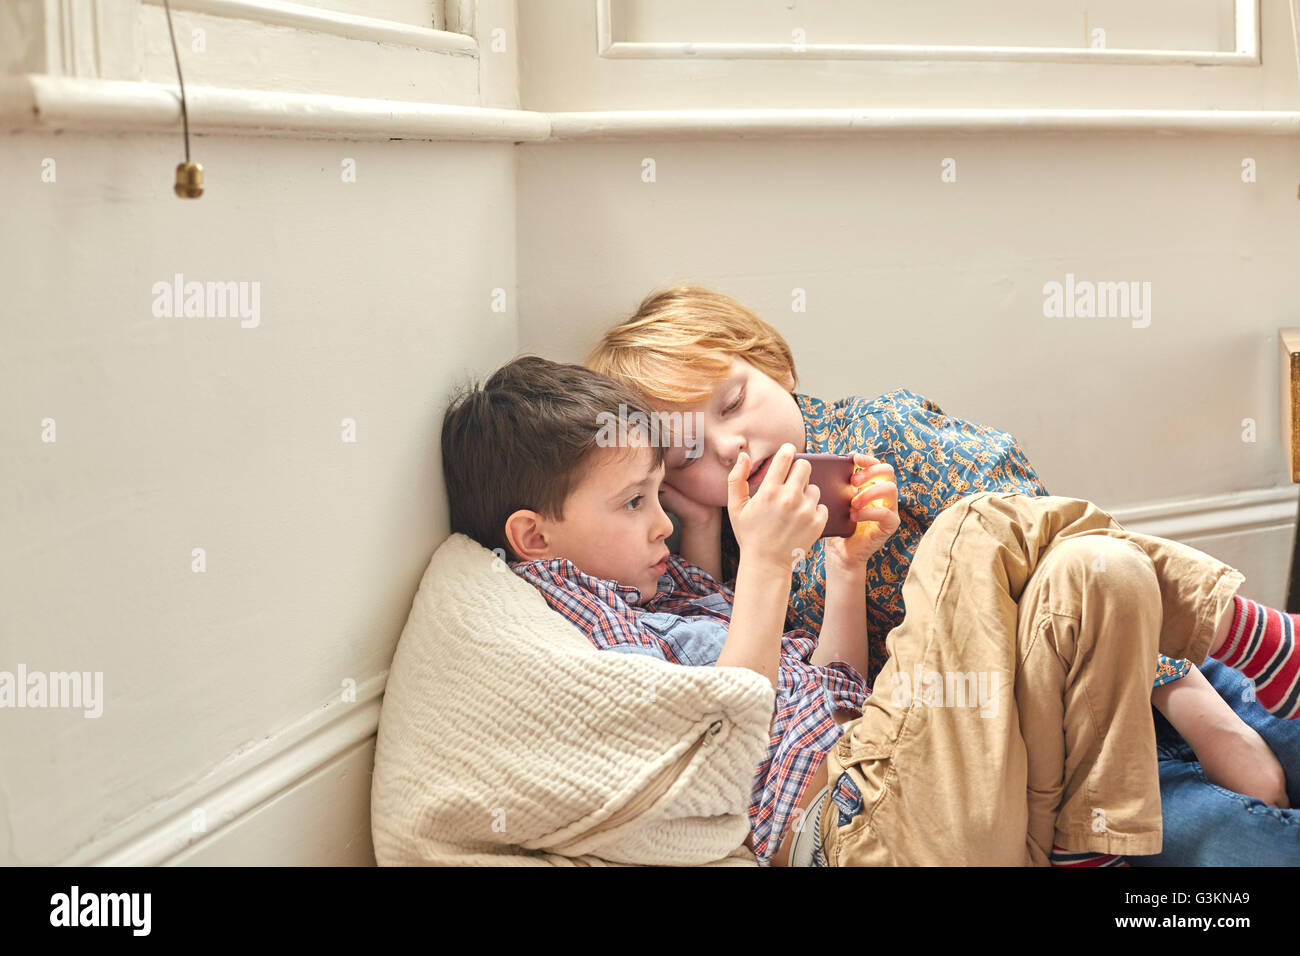 Deux jeunes garçons s'inclinent, assis à l'intérieur, contre le mur, looking at smartphone Banque D'Images